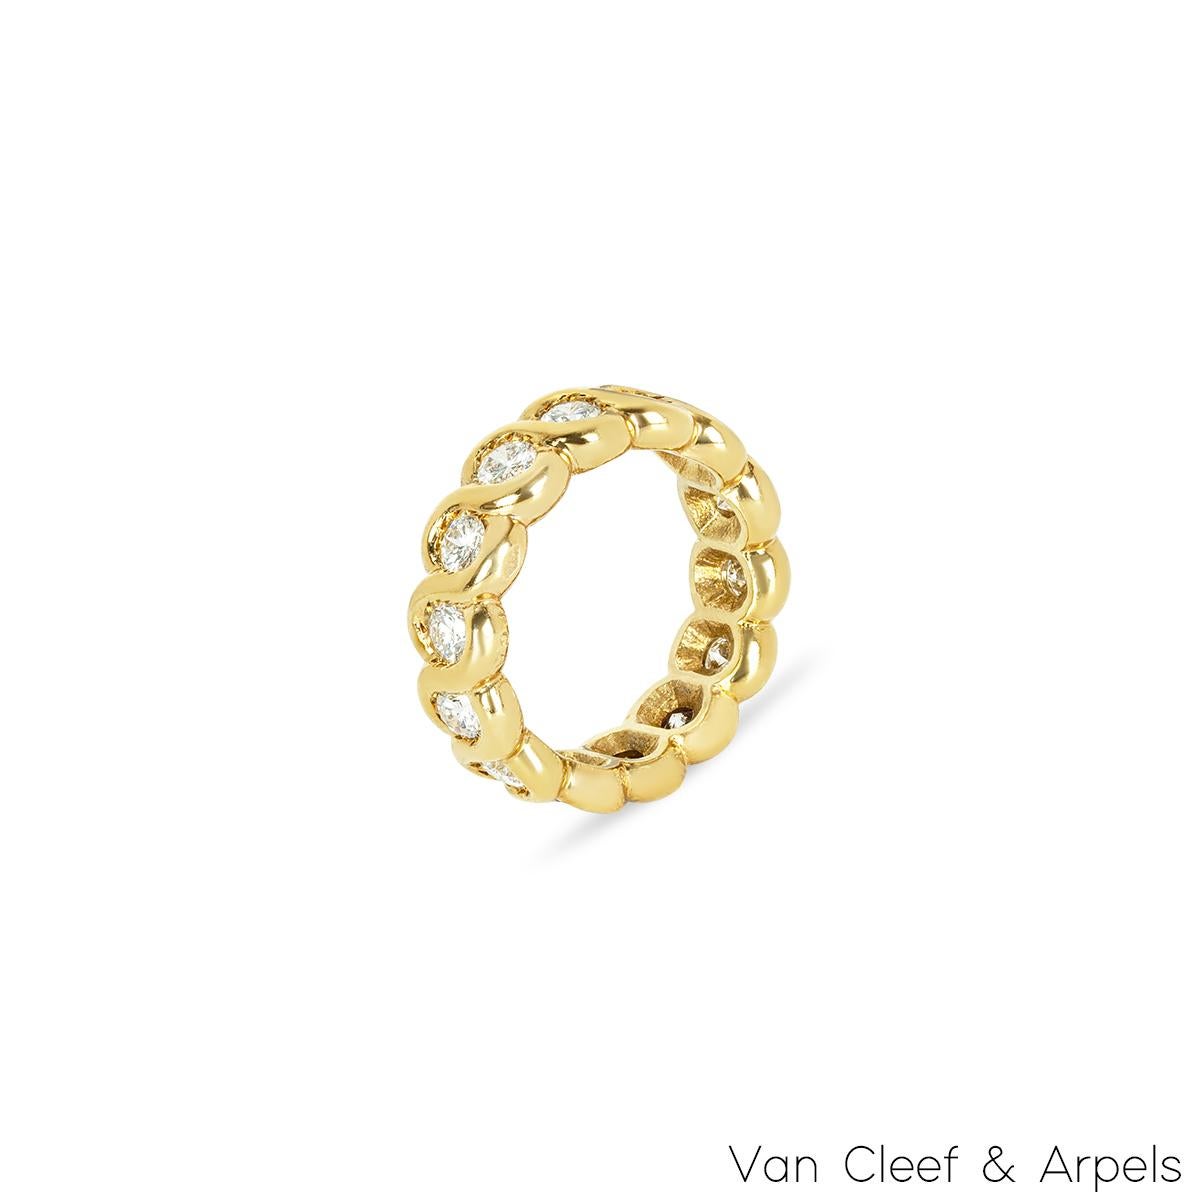 Magnifique bague d'éternité en or jaune 18 carats de Van Cleef & Arpels avec diamants. La bague comprend 14 diamants ronds de taille brillant en serti clos, sertis sur tout le pourtour de l'anneau. Les diamants ont un poids total de 1,40ct, de